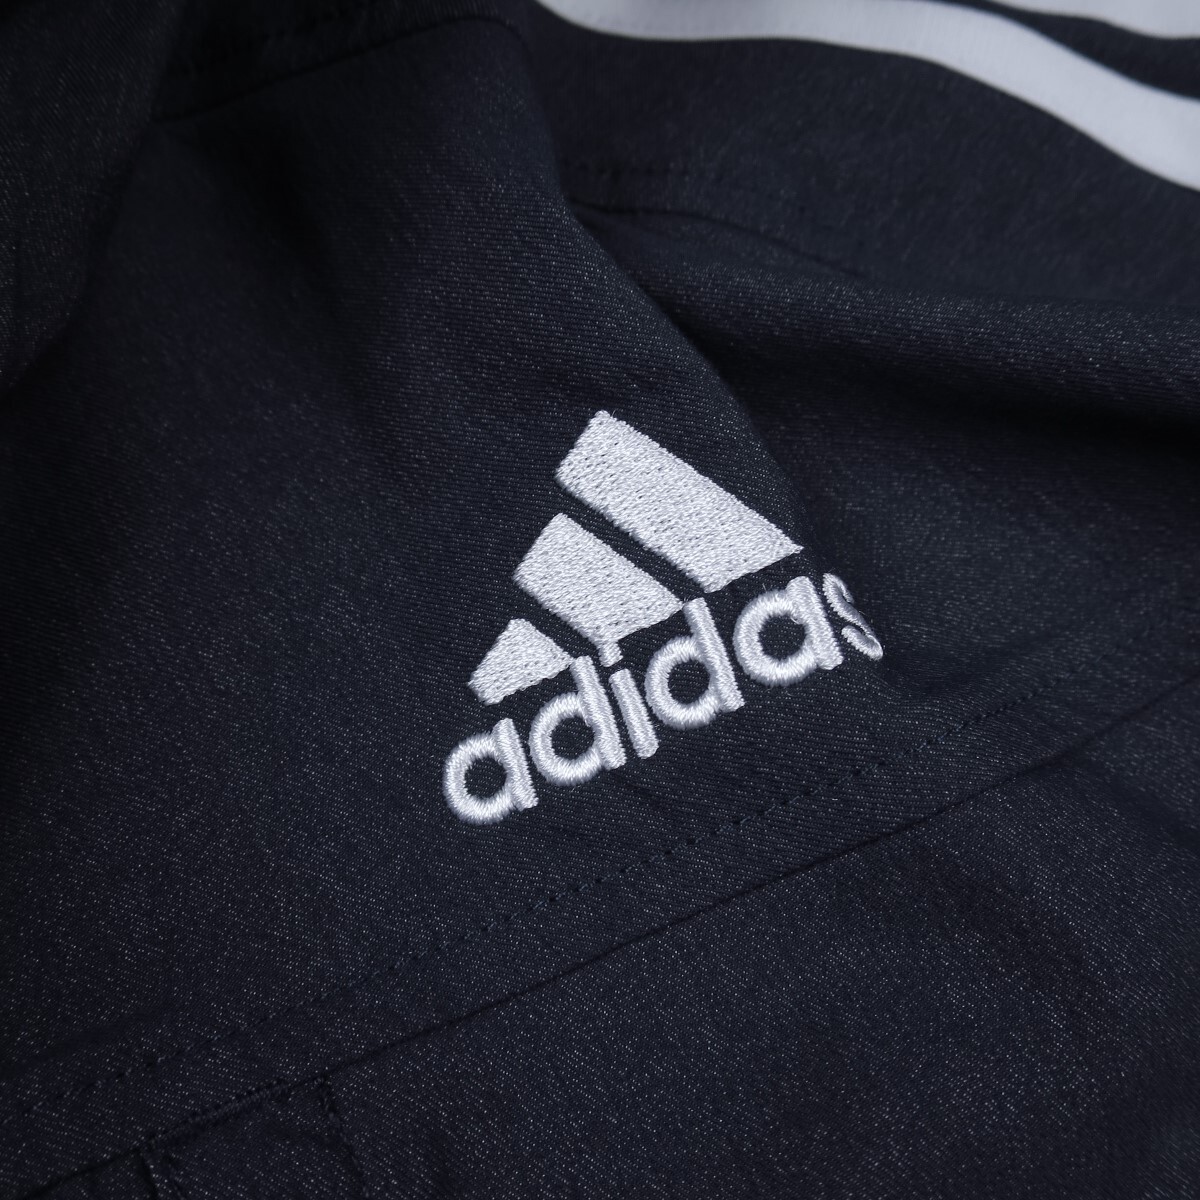  новый товар * Adidas /adidas/s Lee полоса su-bn Cross жакет F22/389 темно-синий /[XL]